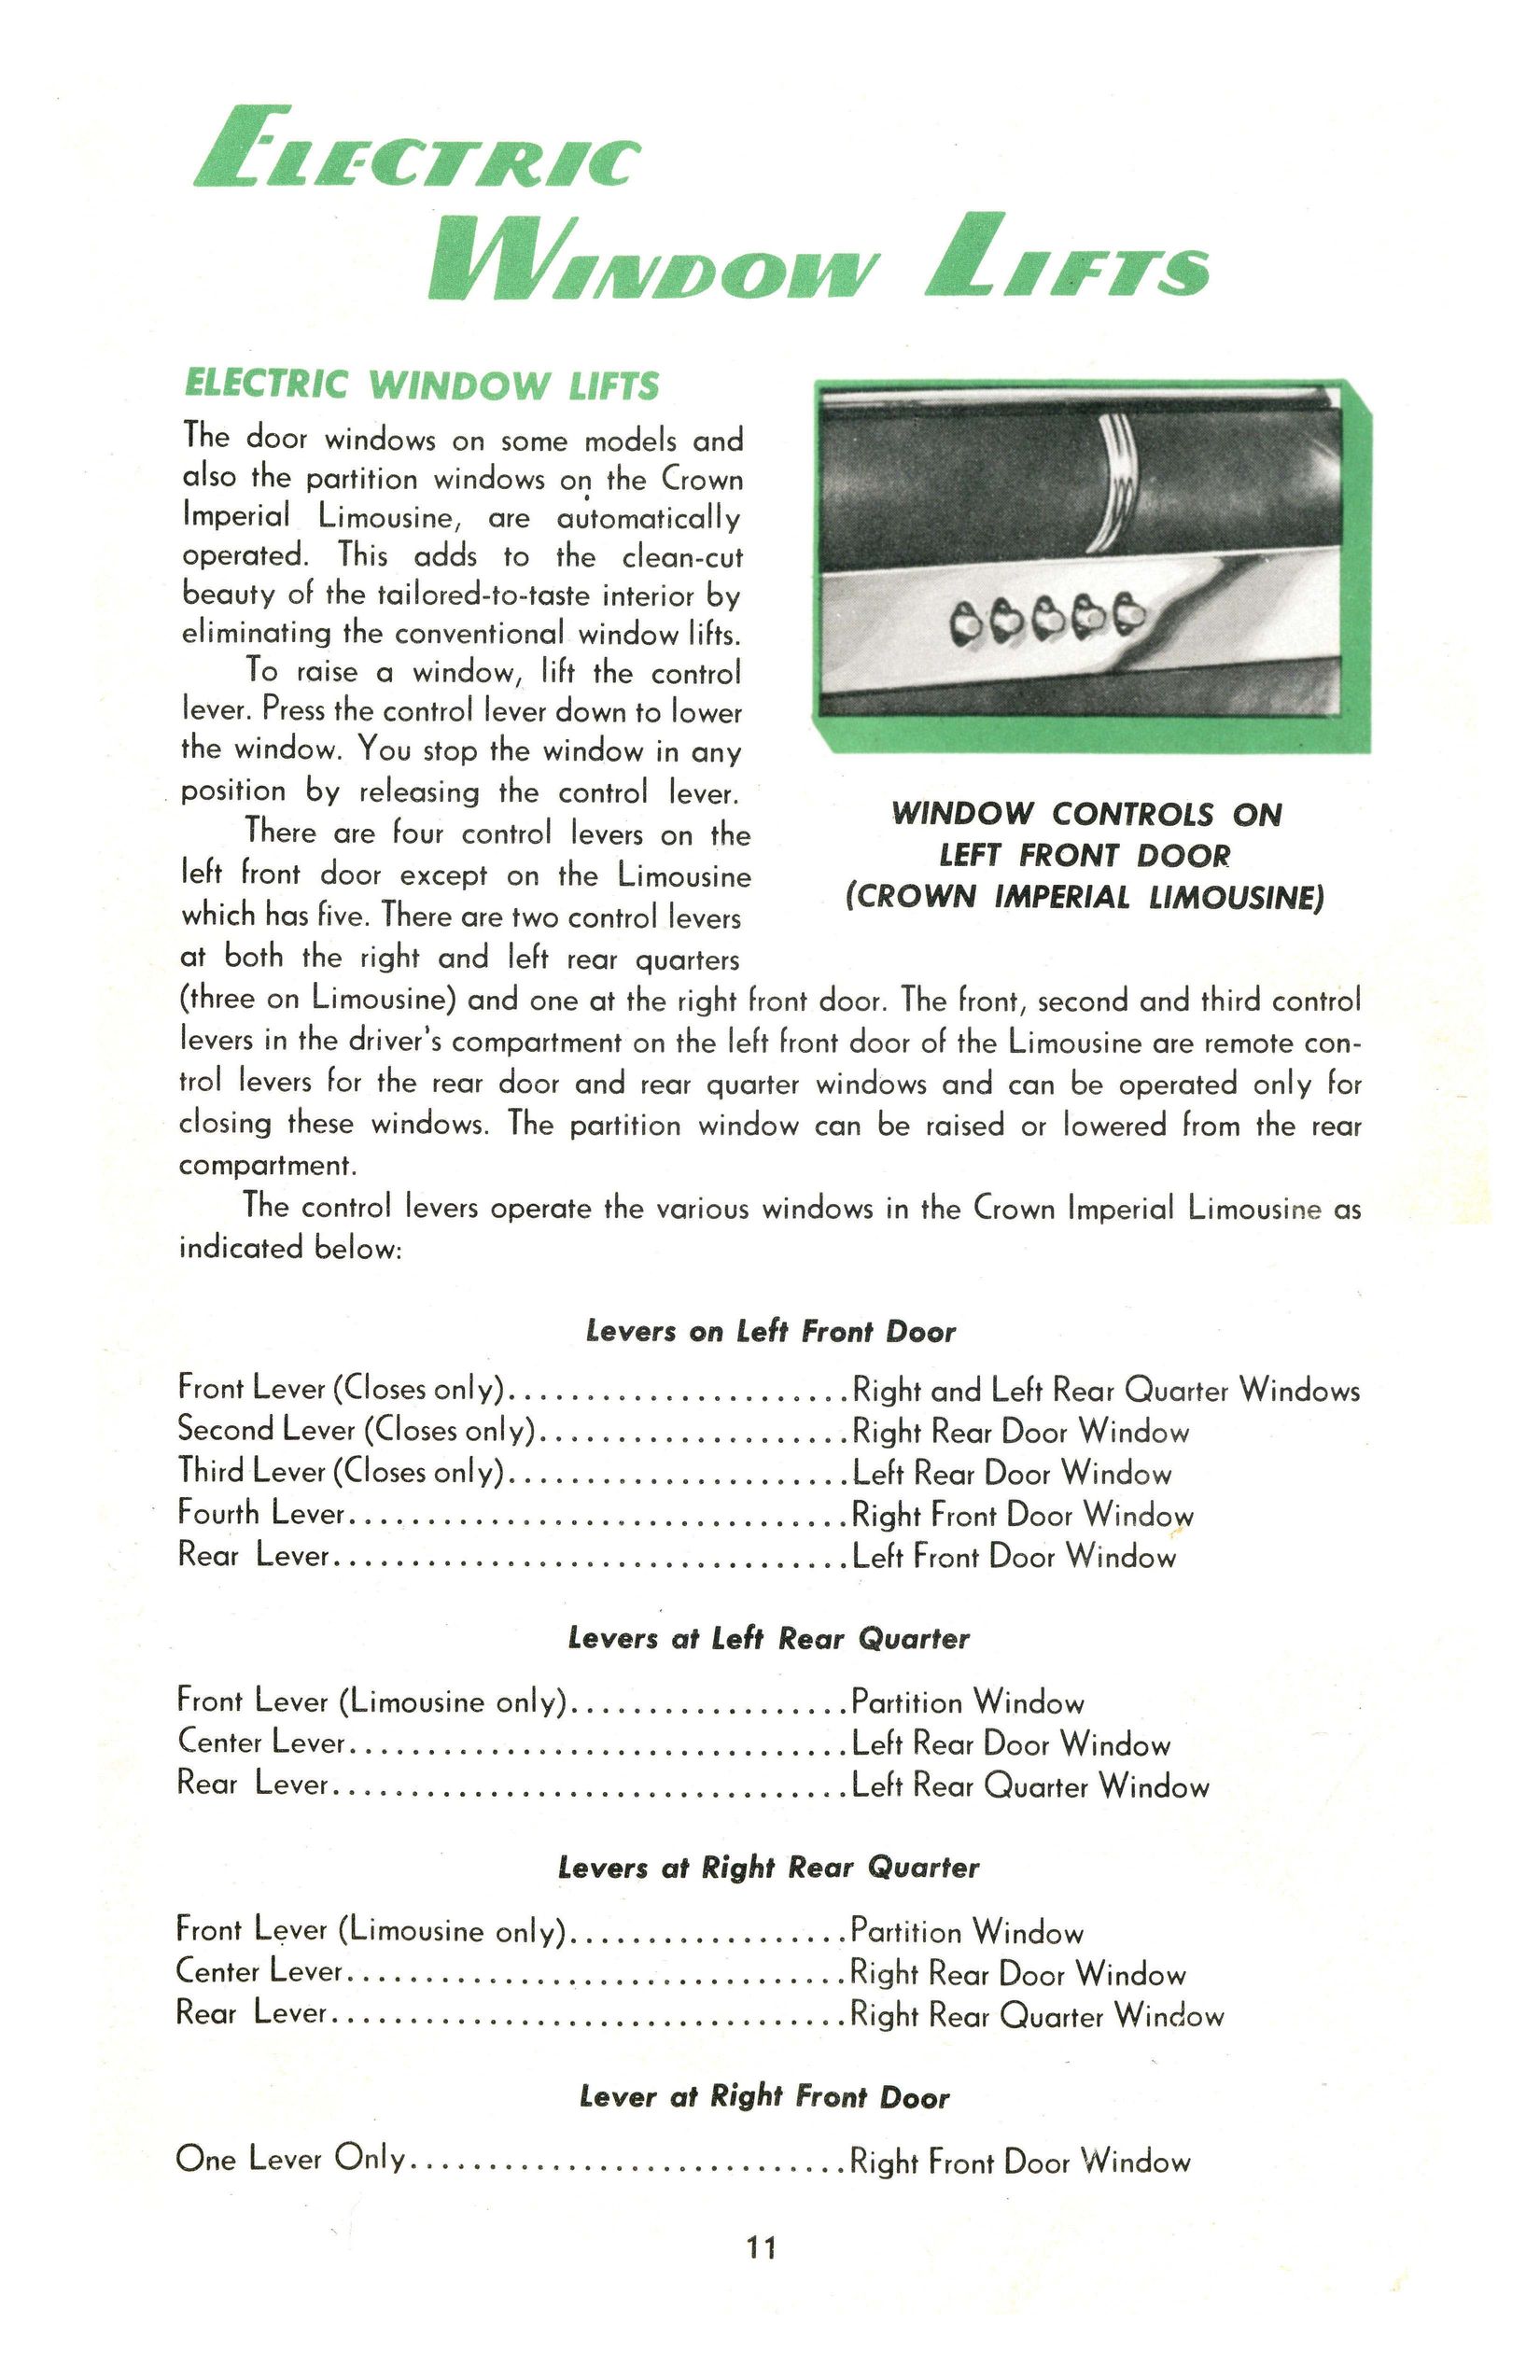 1951_Chrysler_Manual-11